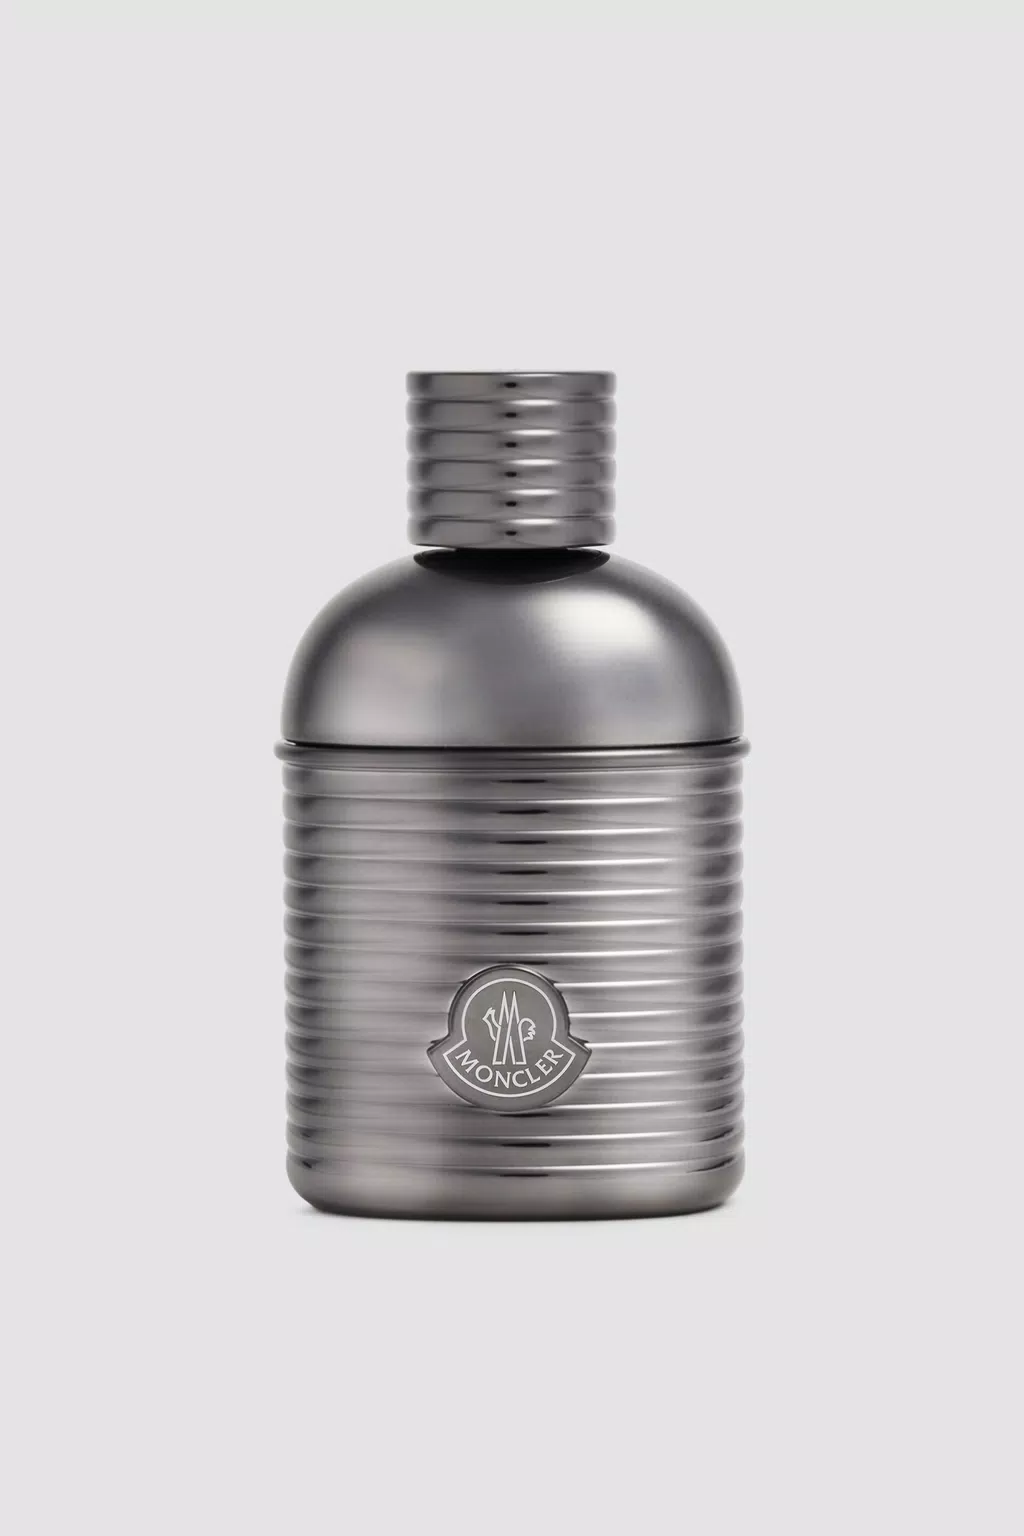 White Moncler Sunrise Pour Homme 60 ml - Perfumes for Men | Moncler MT